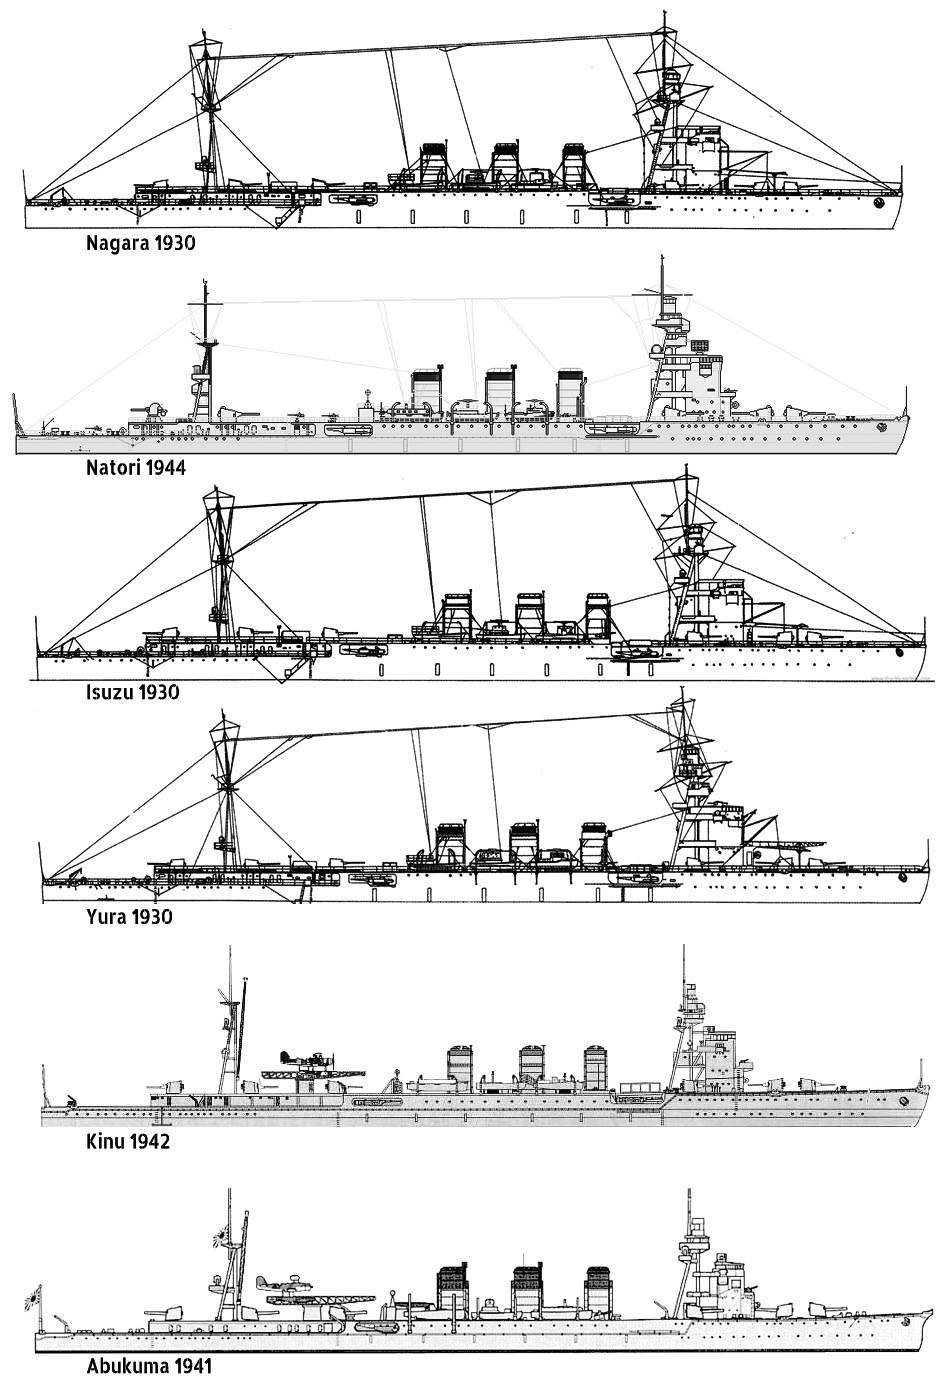 Design variations between ships in 1941